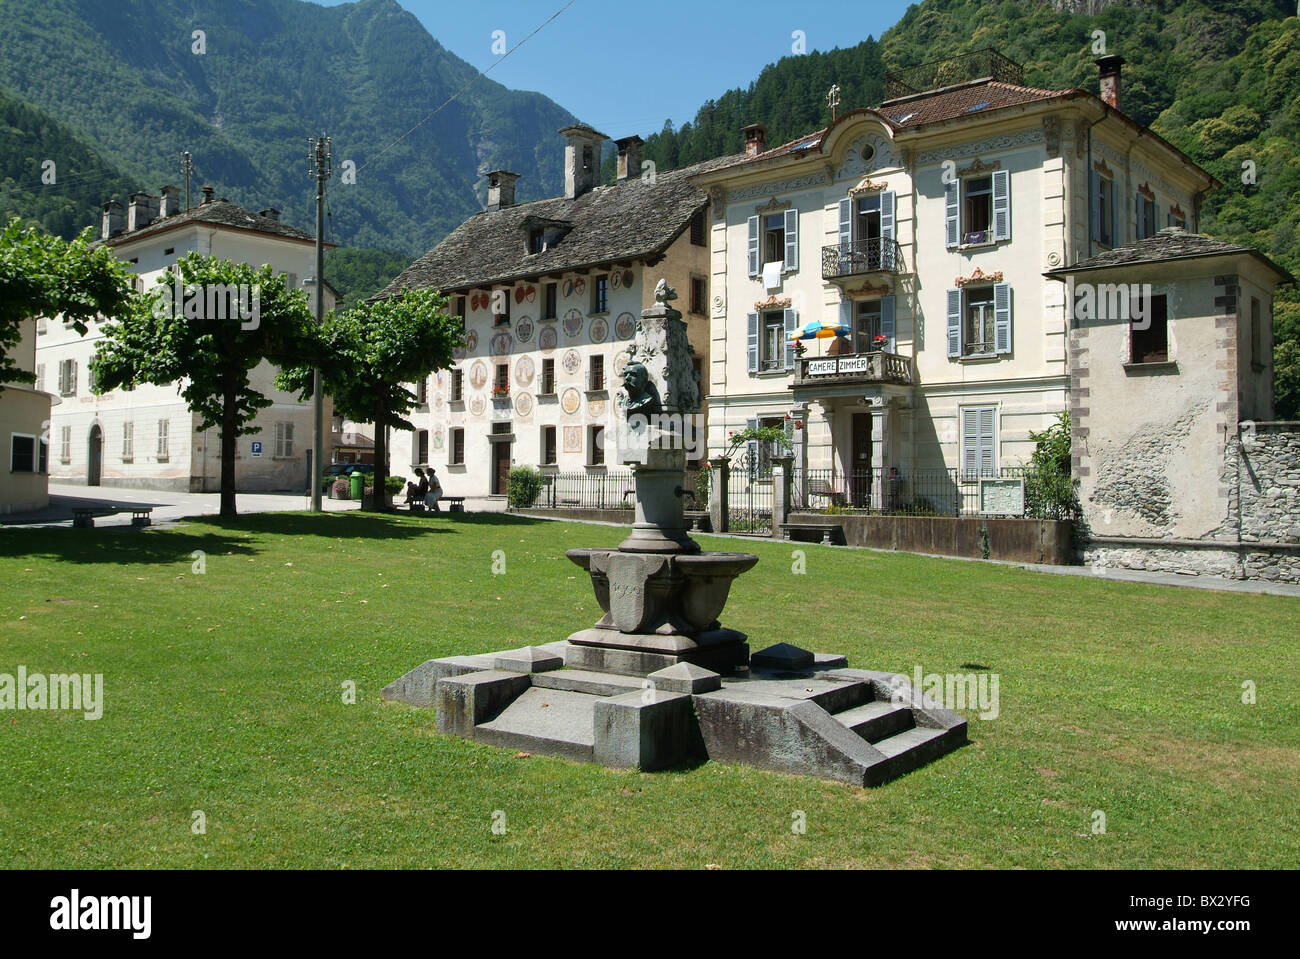 Einem Dorf Cevio platzieren Patrizierhäuser Brunnen Häuser Häuser Valle Maggia Schweiz Europa Kanton or Stockfoto